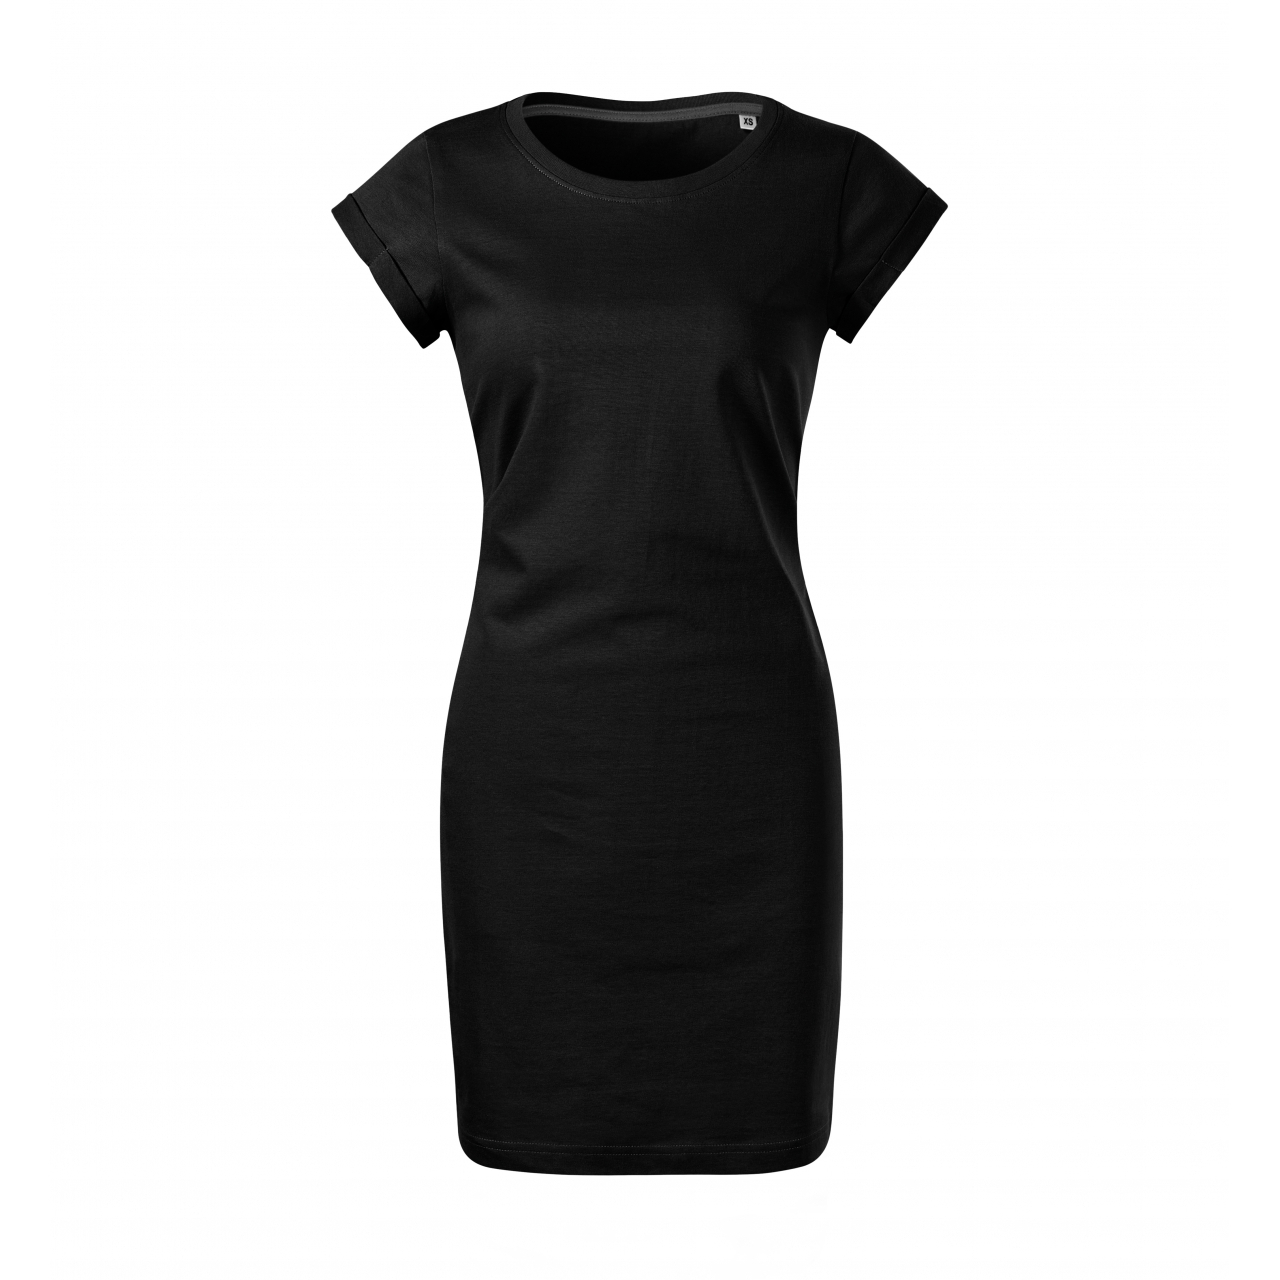 Šaty dámské Malfini Freedom - černé, XL